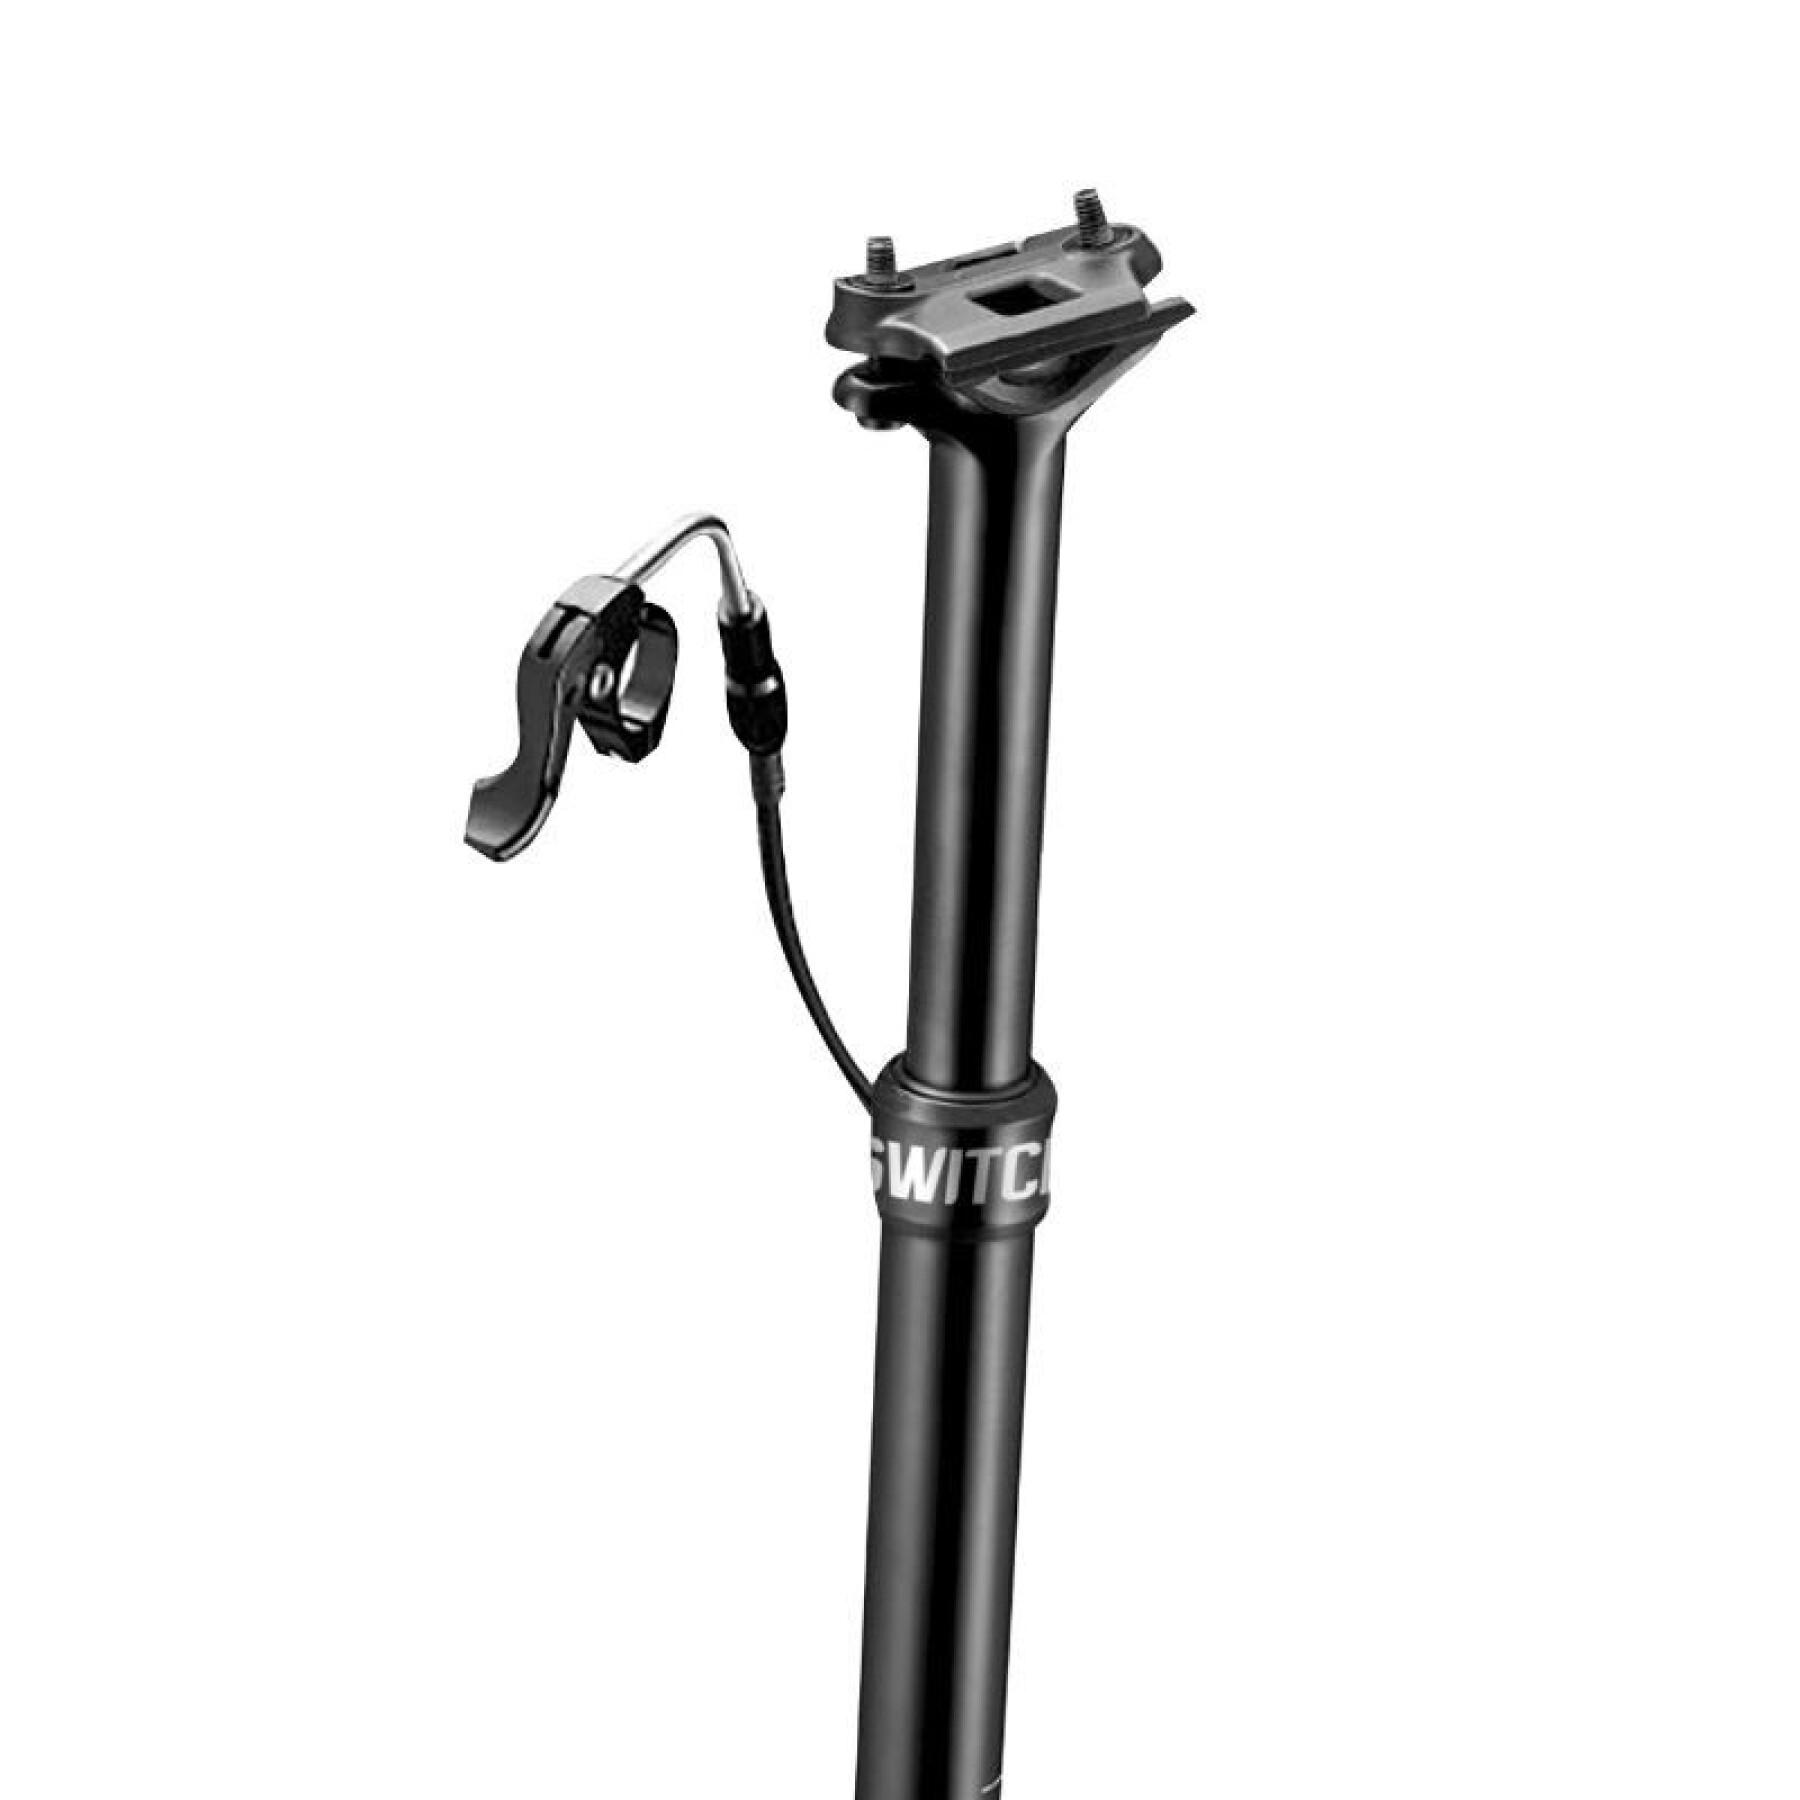 Tija de sillín ajustable para bicicleta de montaña con cable interno, fijación central de aluminio Gist Switch SW-125